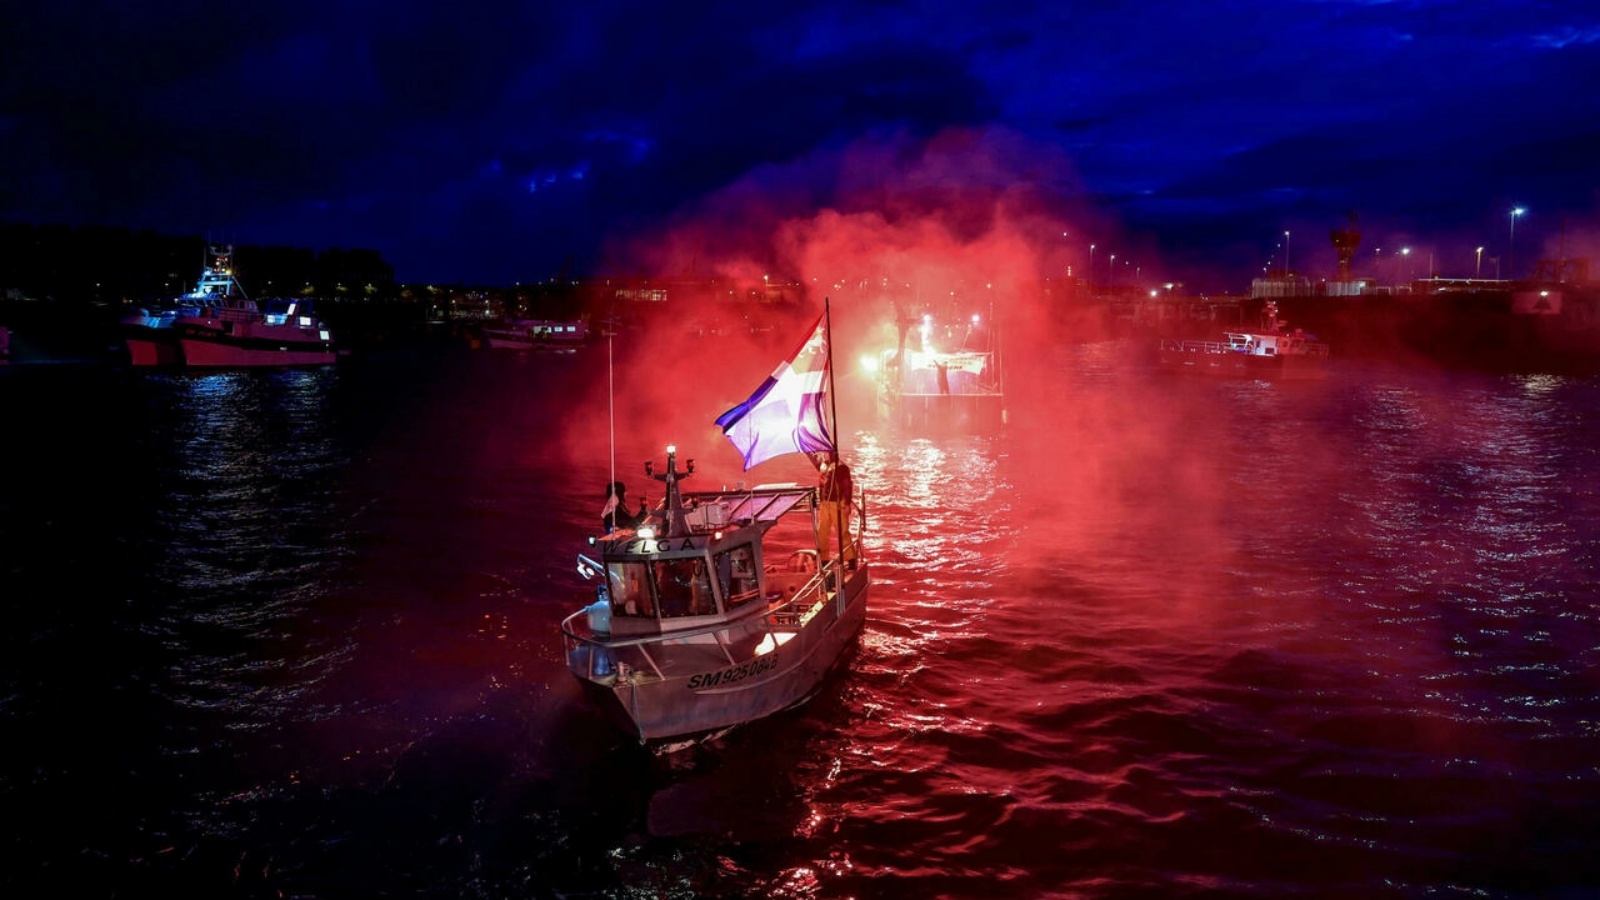 قوارب الصيد الفرنسية تغلق مدخل ميناء سان مالو احتجاجًا على حقوق الصيد (بعد خروج بريطانيا من الاتحاد الأوروبي) التي سمحت بها بريطانيا. الجمعة 26 تشرين الثاني/نوفمبر 2021